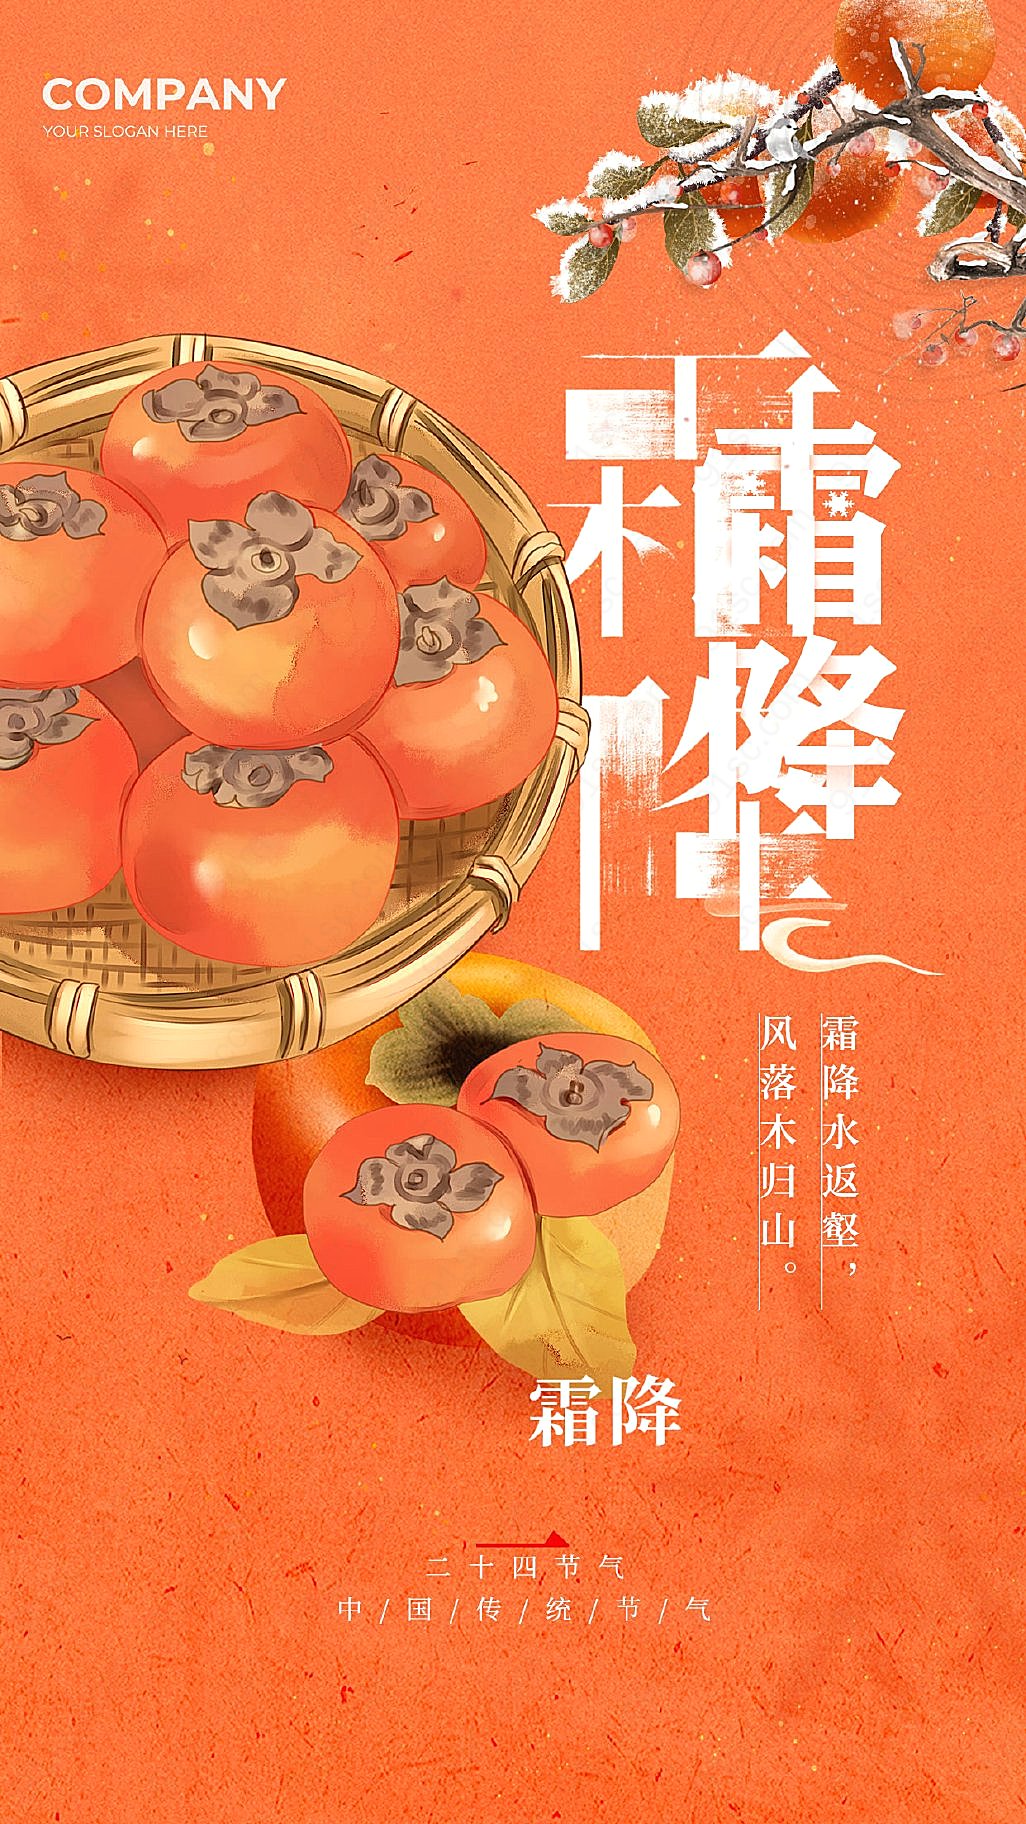 橙色霜降元素创新手机宣传海报设计新媒体用图下载